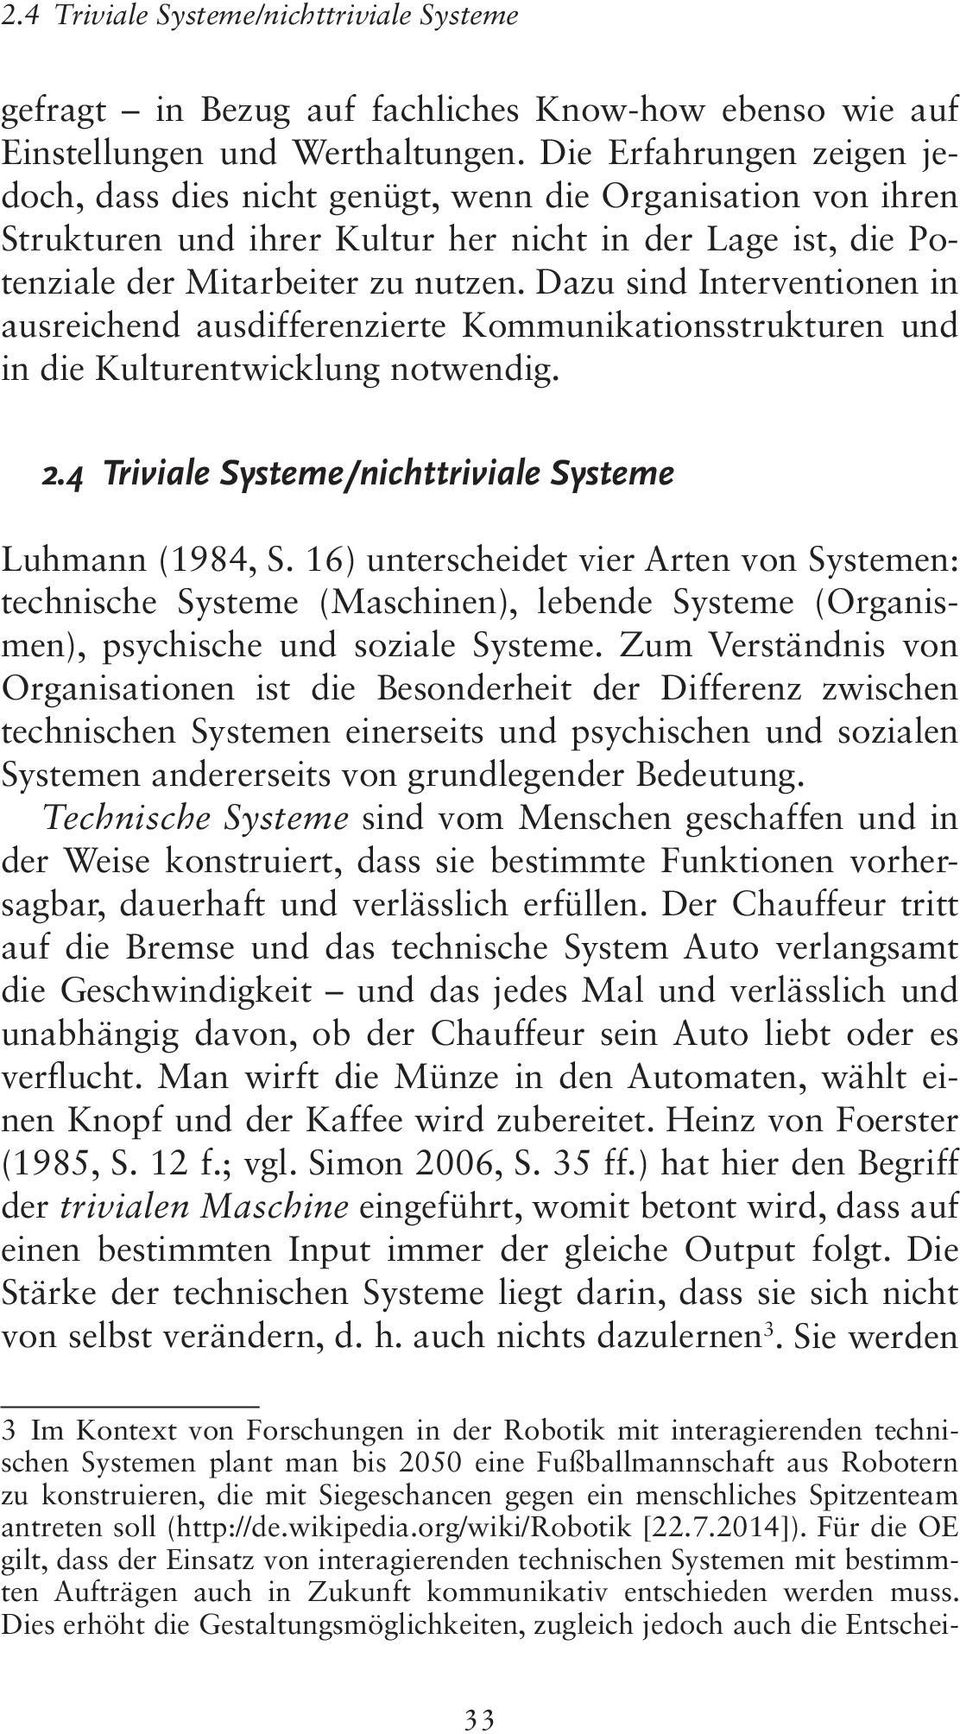 Dazu sind Interventionen in ausreichend ausdifferenzierte Kommunikationsstrukturen und in die Kulturentwicklung notwendig. 2.4 Triviale Systeme/nichttriviale Systeme Luhmann (1984, S.